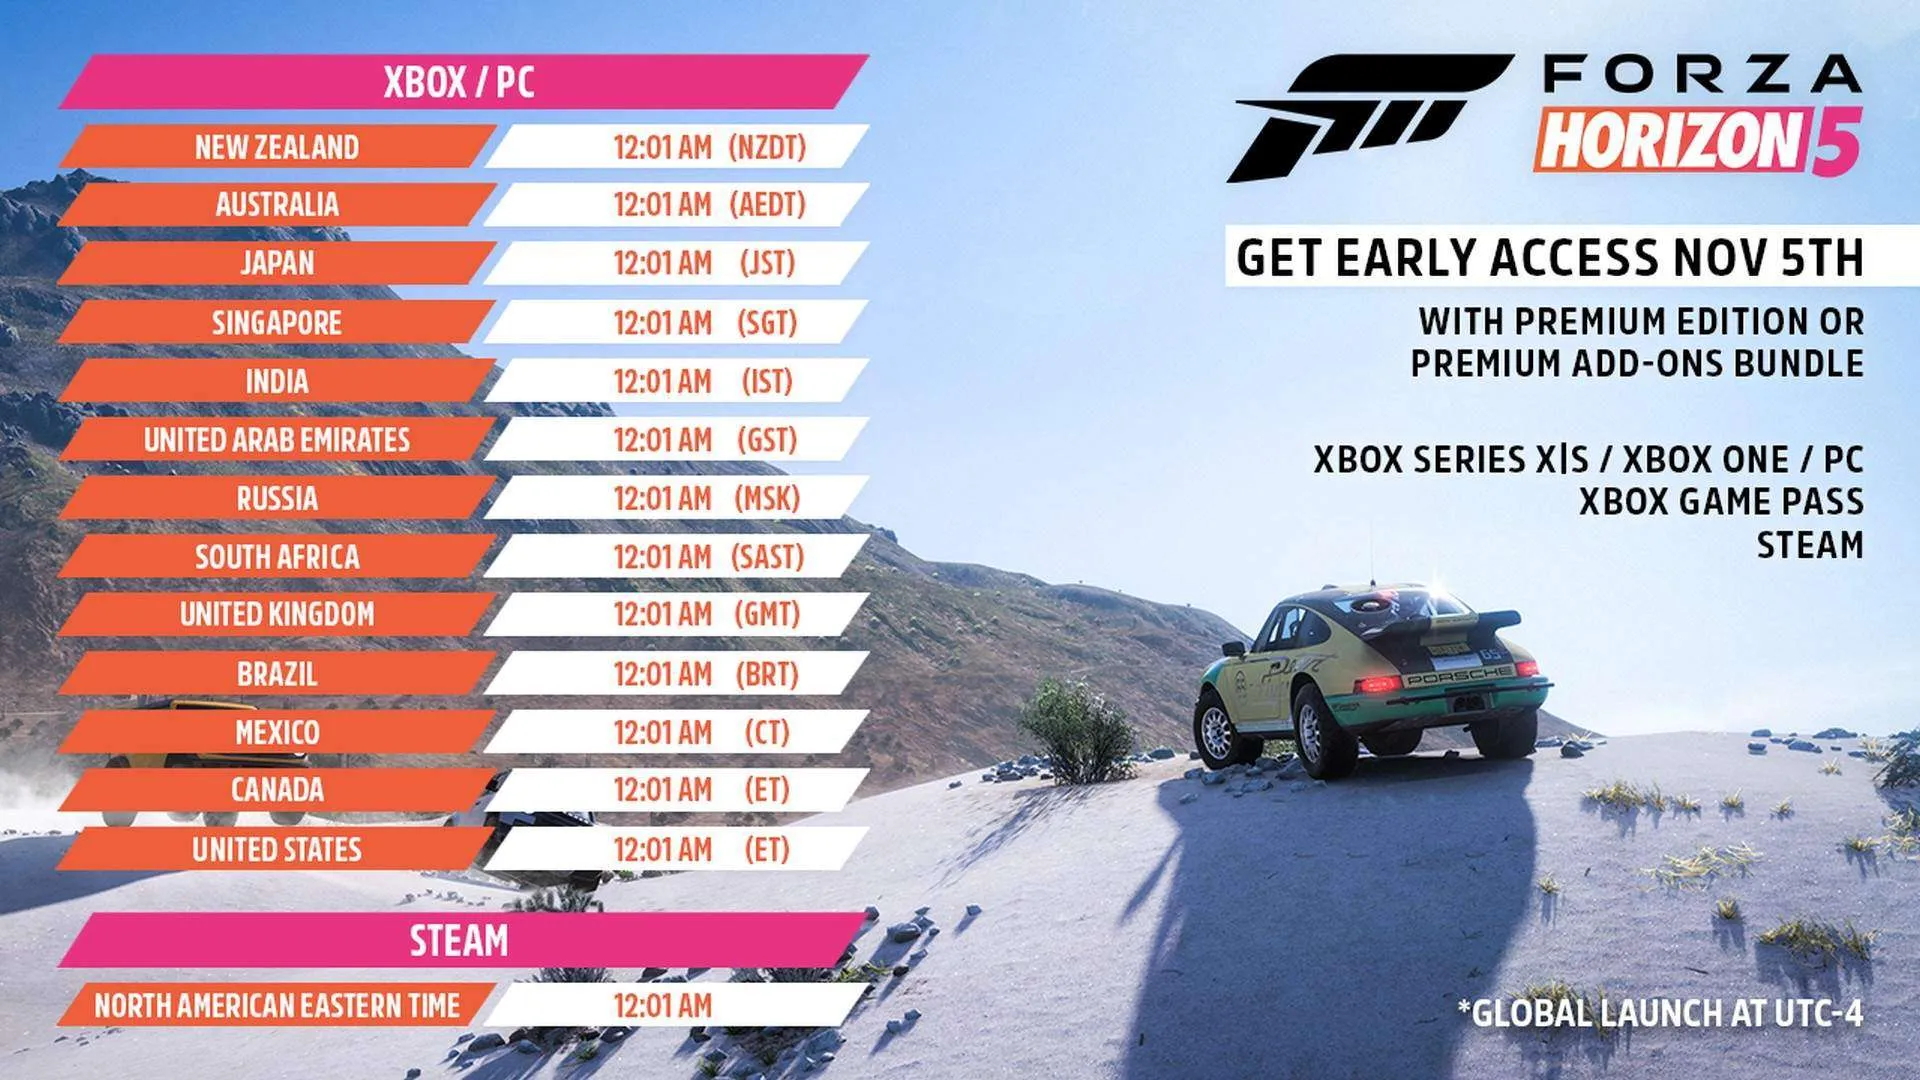 Forza Horizon 5 early access starts tomorrow